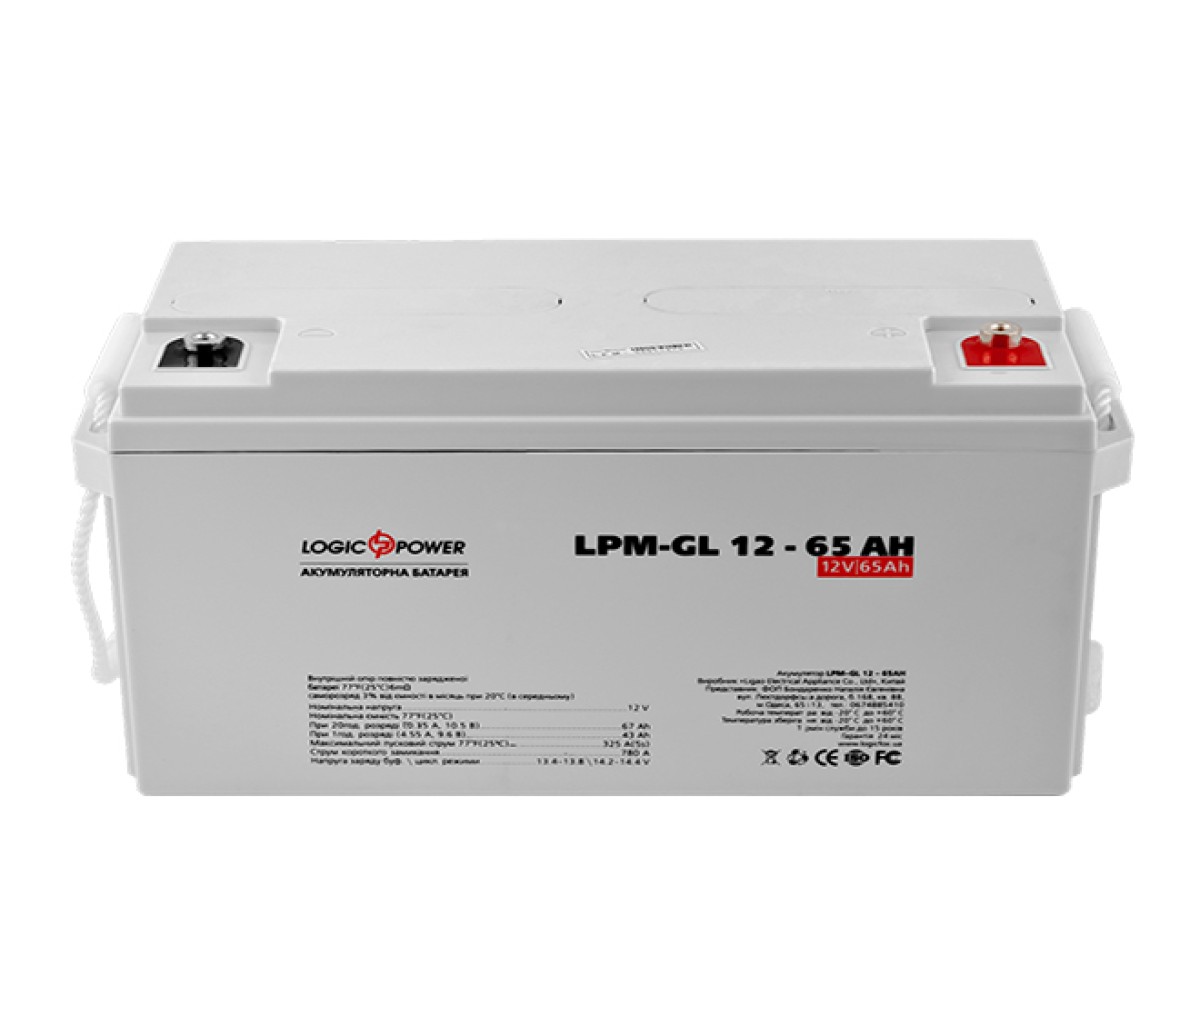 Аккумулятор гелевый LPM-GL 12 - 65 AH 98_85.jpg - фото 2